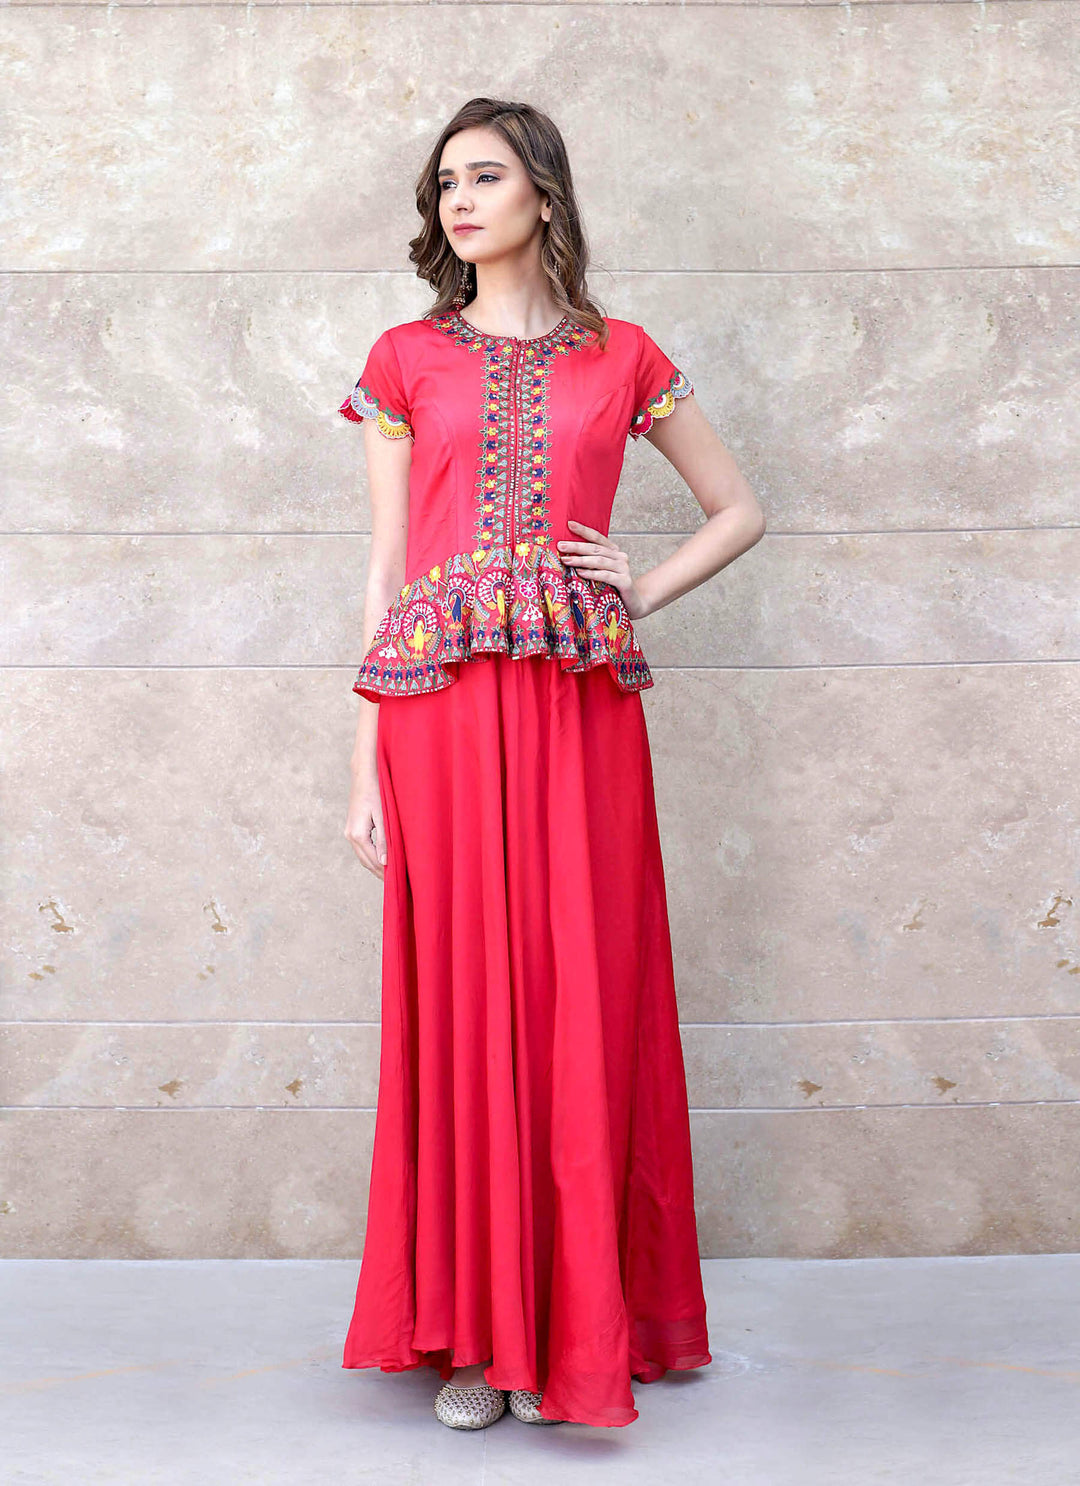 Red Ethnic Peplum Dress Standing